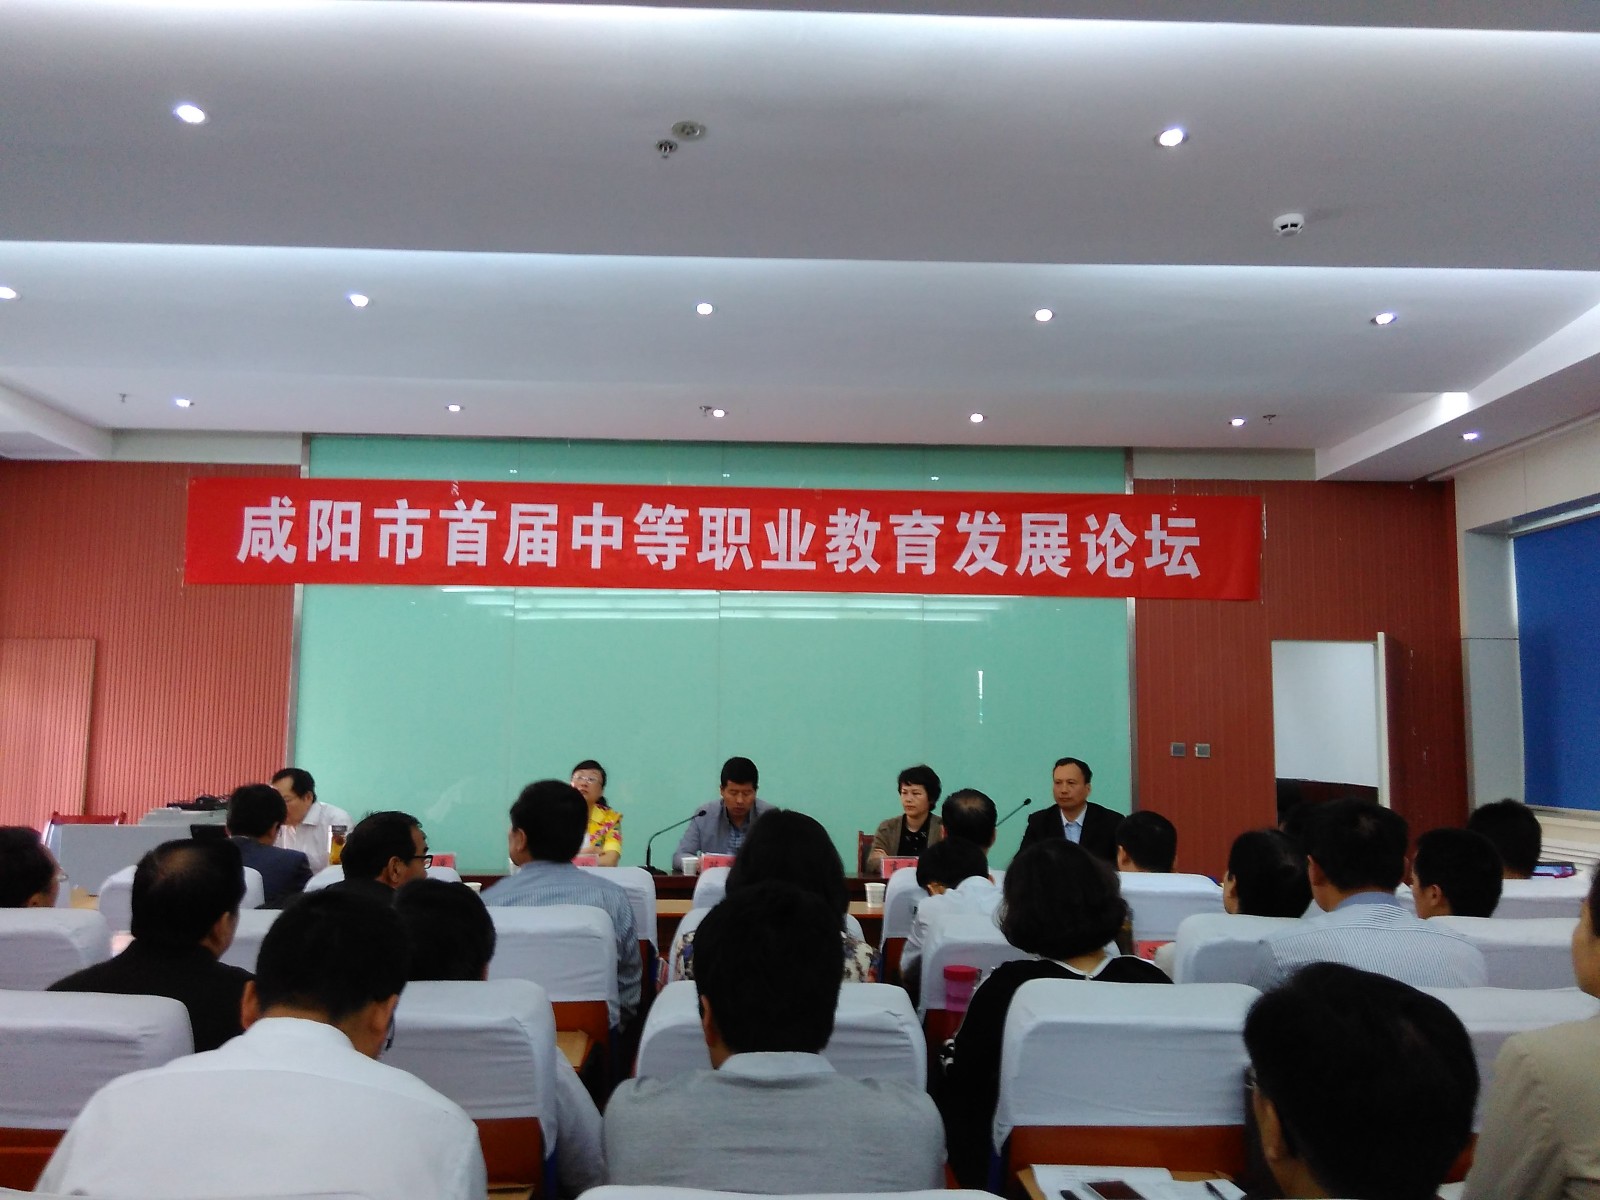 4、咸阳市教育局举办的咸阳市首届中等职业教育发展论坛，我公司作为参会单位出席了大会.jpg